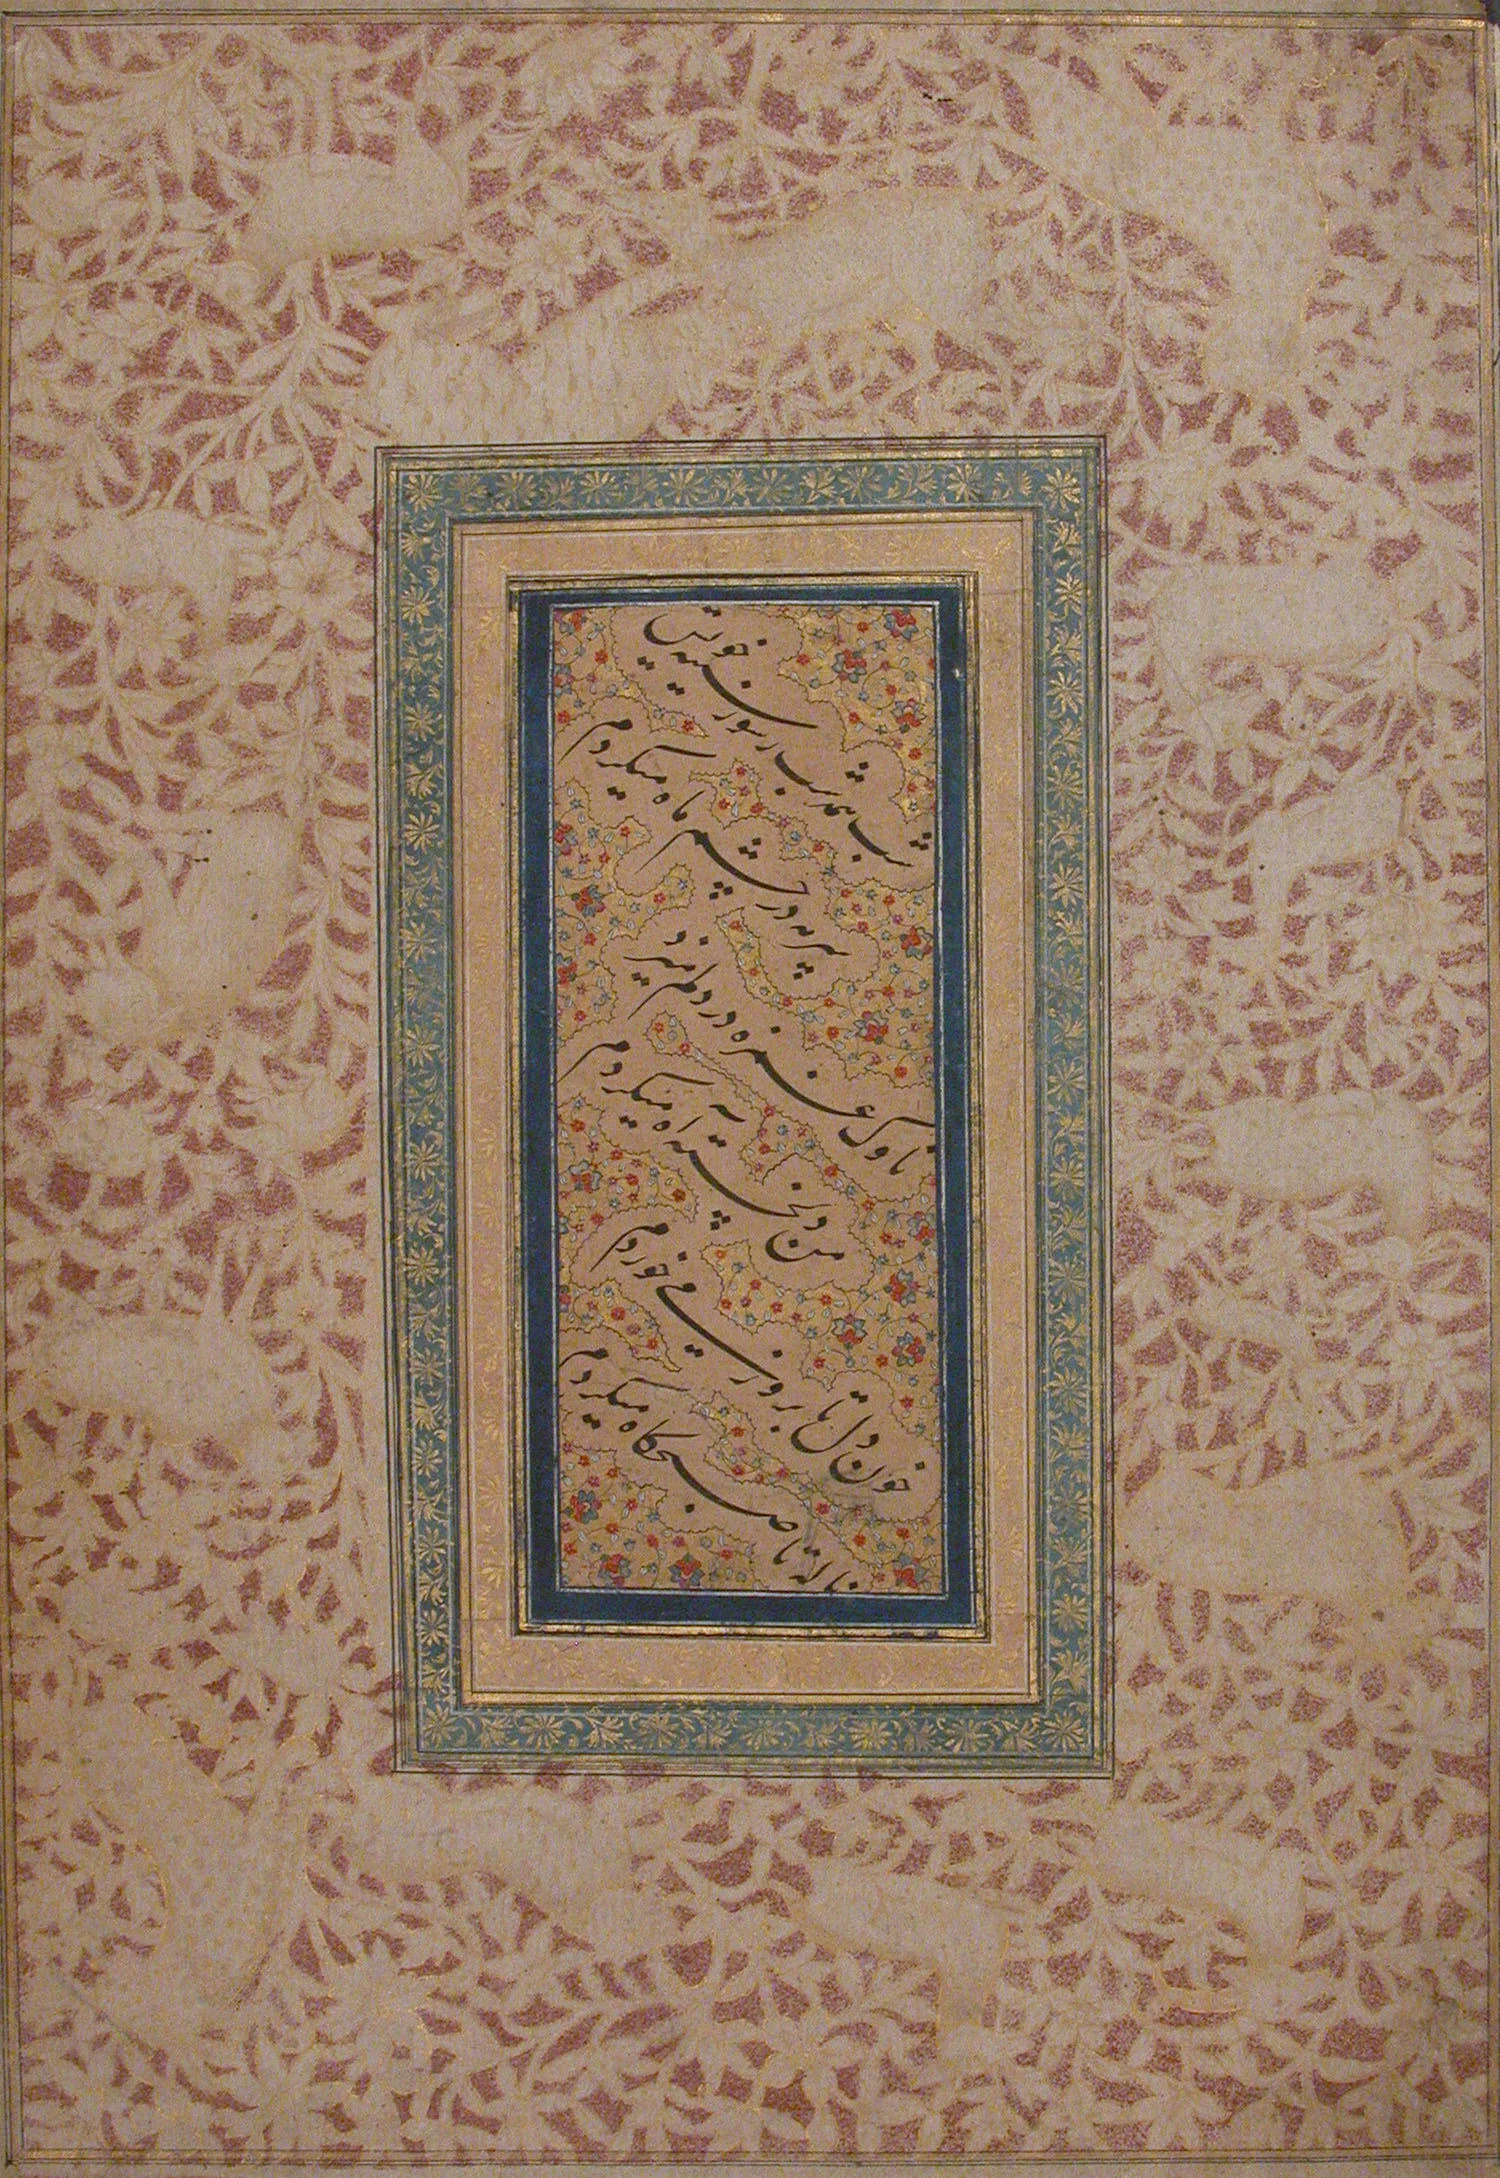 Nasta'liq Calligraphy, Bichitr